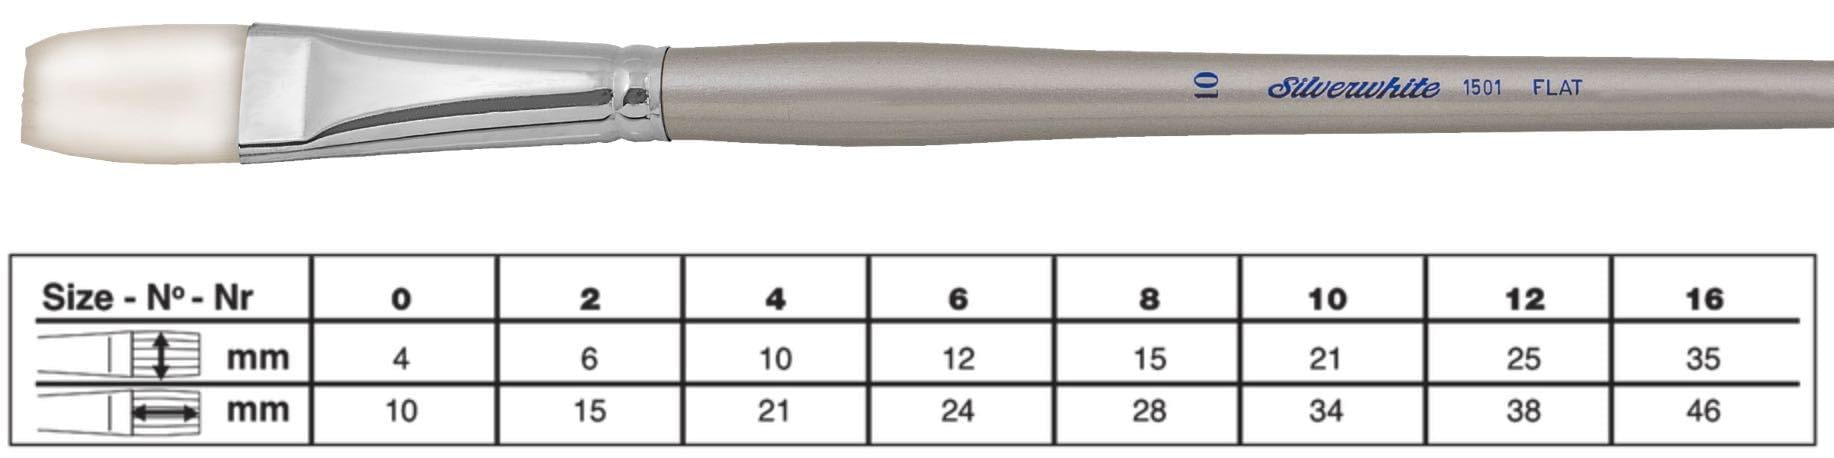 SILVER BRUSH SILVER BRUSH 12 (25mm x 38mm) Silver Brush 1501 Silverwhite Long Handle